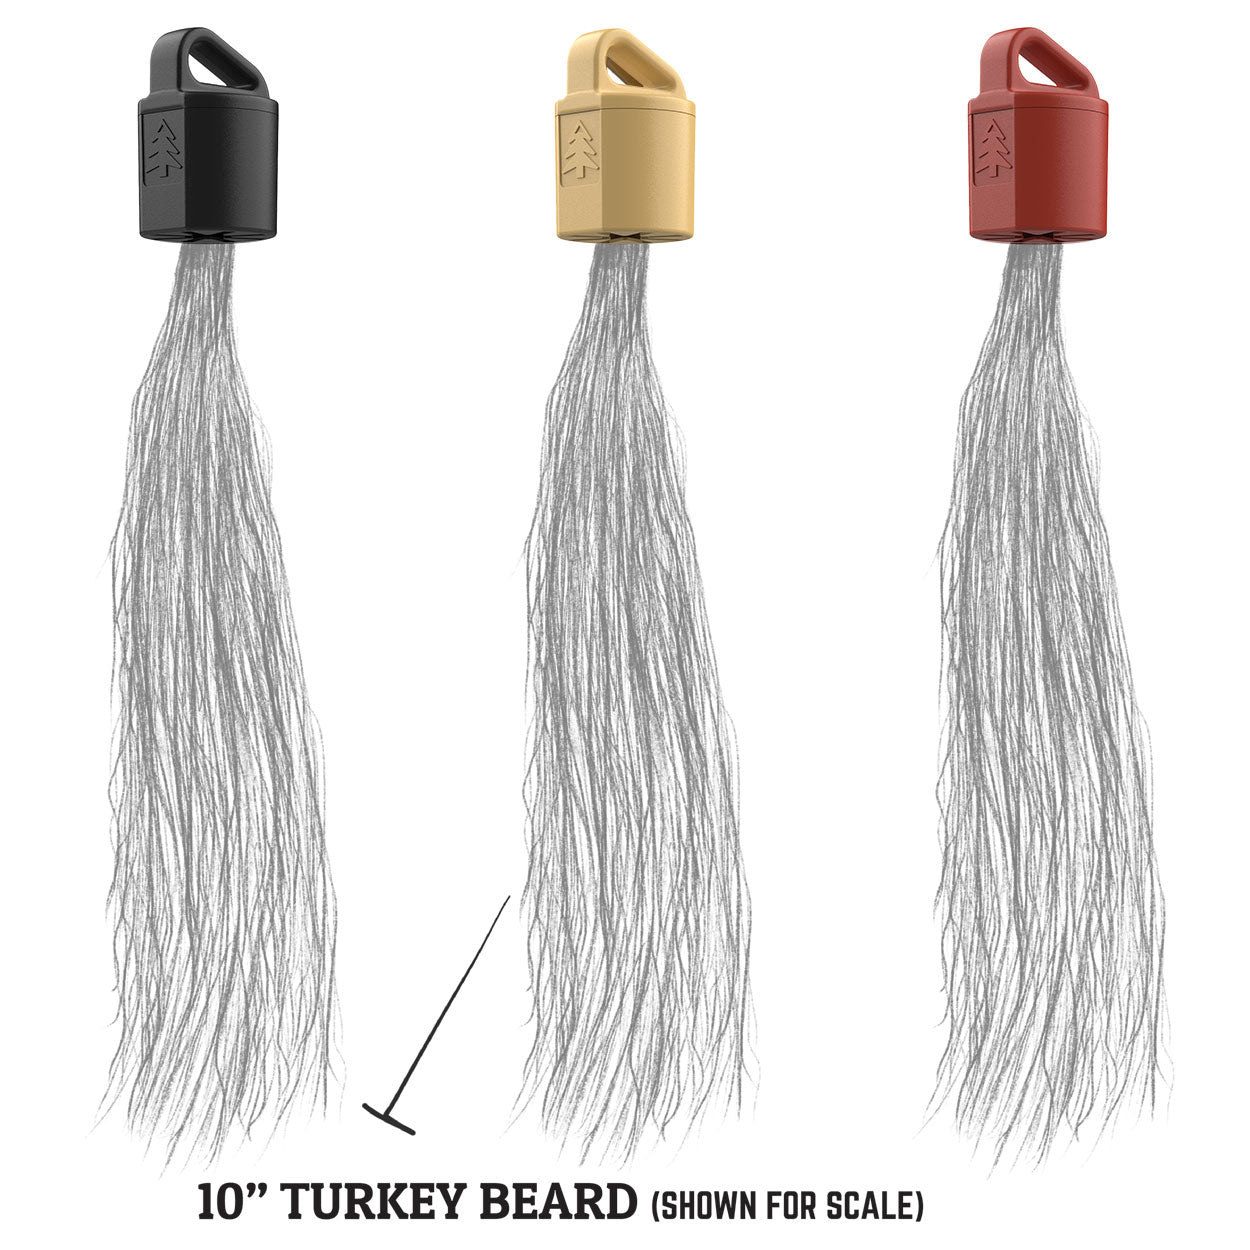 TURKEY BEARD HANGER (3 pack)